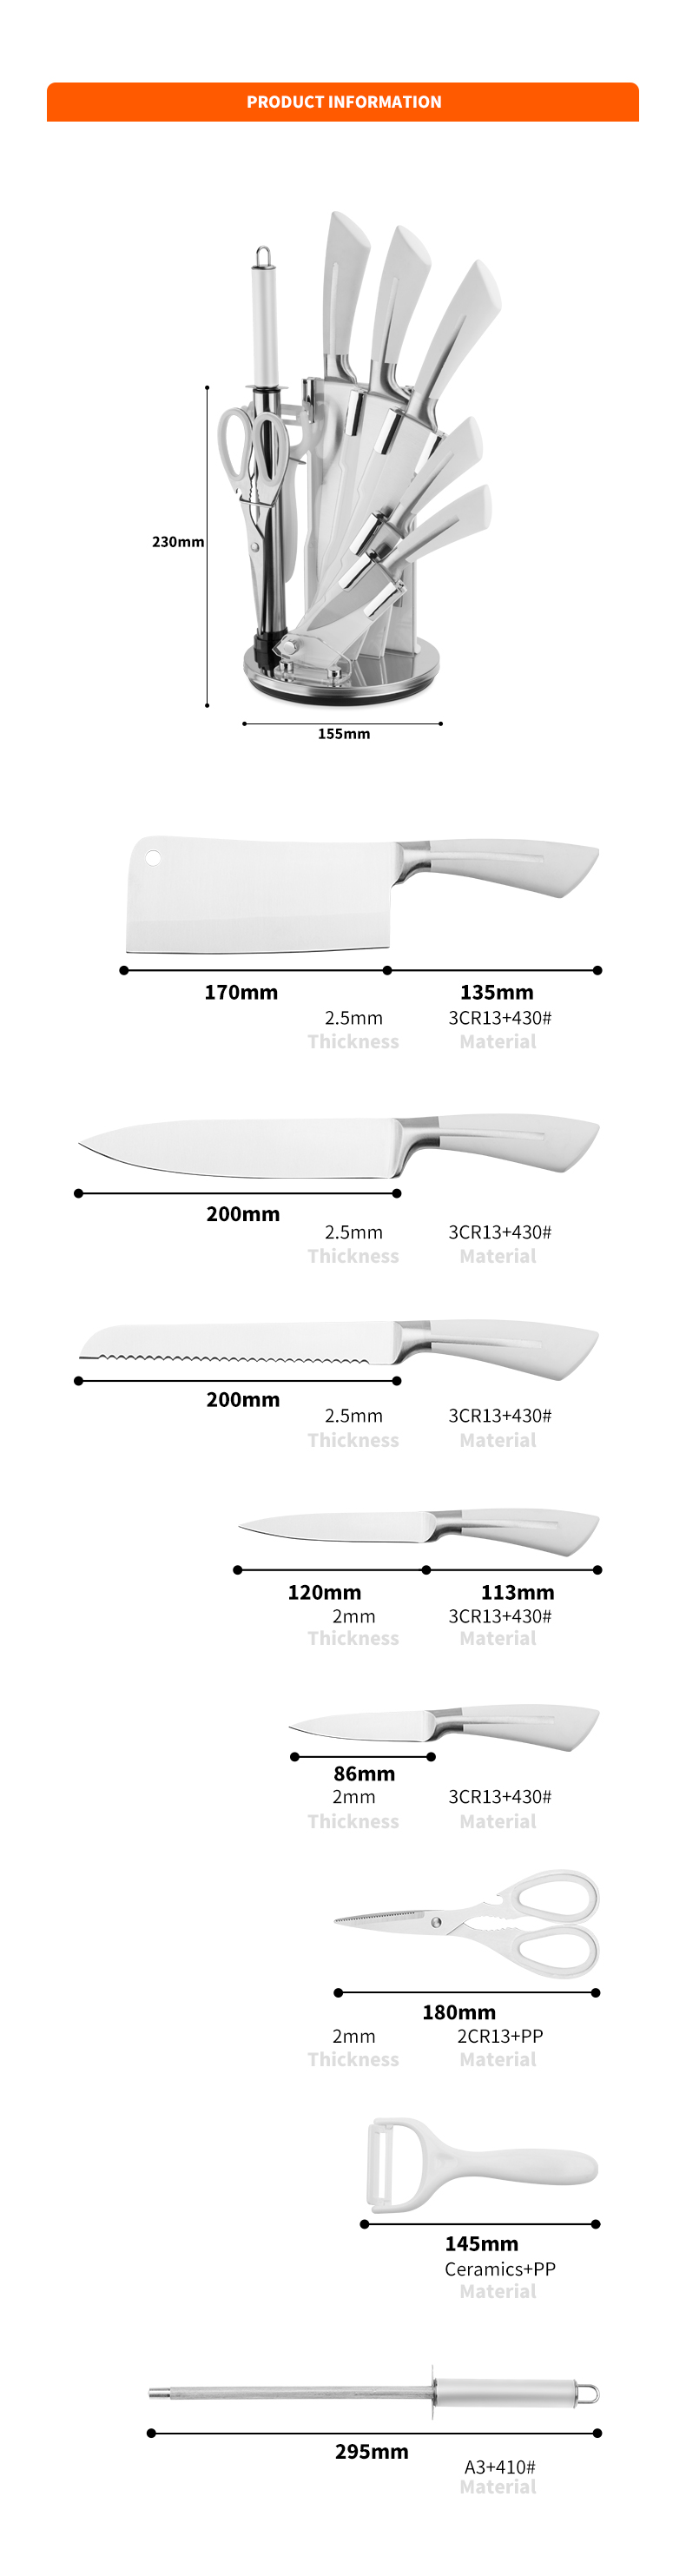 G127-Private Label تصميم جديد 8 قطع 3cr13 طقم سكاكين مطبخ من الفولاذ المقاوم للصدأ مع مجموعة acylic block-ZX | سكين المطبخ ، أدوات المطبخ ، قالب الكعكة من السيليكون ، لوح التقطيع ، مجموعات أدوات الخبز ، سكين الشيف ، سكين اللحم ، سكين التقطيع ، سكين متعدد الاستخدامات ، سكين التقشير ، حاملة السكاكين ، حامل السكين ، سكين سانتوكو ، سكين الطفل الصغير ، سكين بلاستيك ، طلاء غير لاصق سكين ، سكين ملون ، سكين من الفولاذ المقاوم للصدأ ، فتاحة علب ، فتاحة زجاجات ، مصفاة شاي ، مبشرة ، مضرب بيض ، أداة مطبخ من النايلون ، أداة مطبخ من السيليكون ، قاطعة ملفات تعريف الارتباط ، مجموعة سكاكين الطبخ ، مبراة سكاكين ، مقشرة ، سكين كعكة ، سكين الجبن ، بيتزا سكين ، ملعقة سيليكون ، ملعقة سيليكون ، ملقط طعام ، سكين مزور ، مقص مطبخ ، سكاكين خبز الكيك ، سكاكين طبخ الأطفال ، سكين نحت